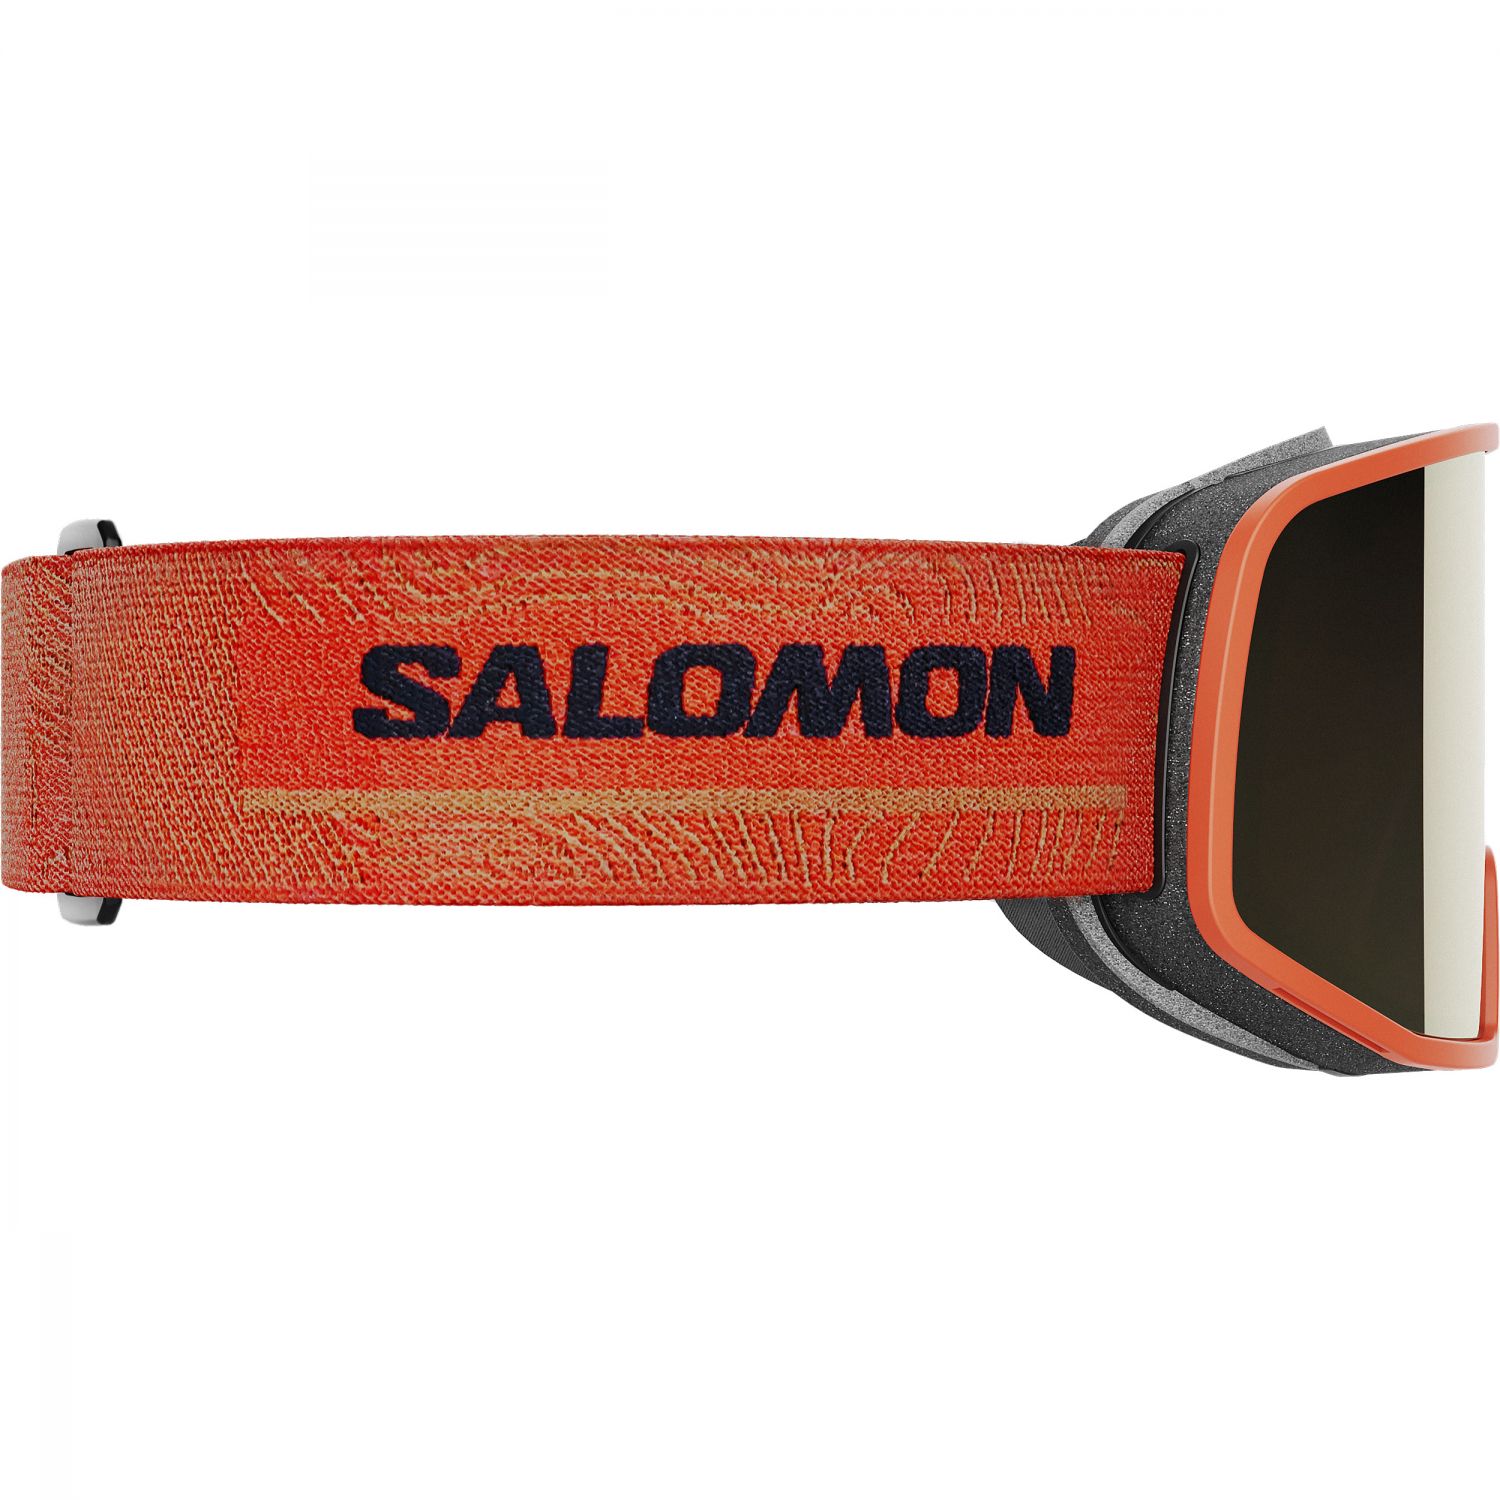 Salomon Lo Fi Sigma, masque de ski, orange